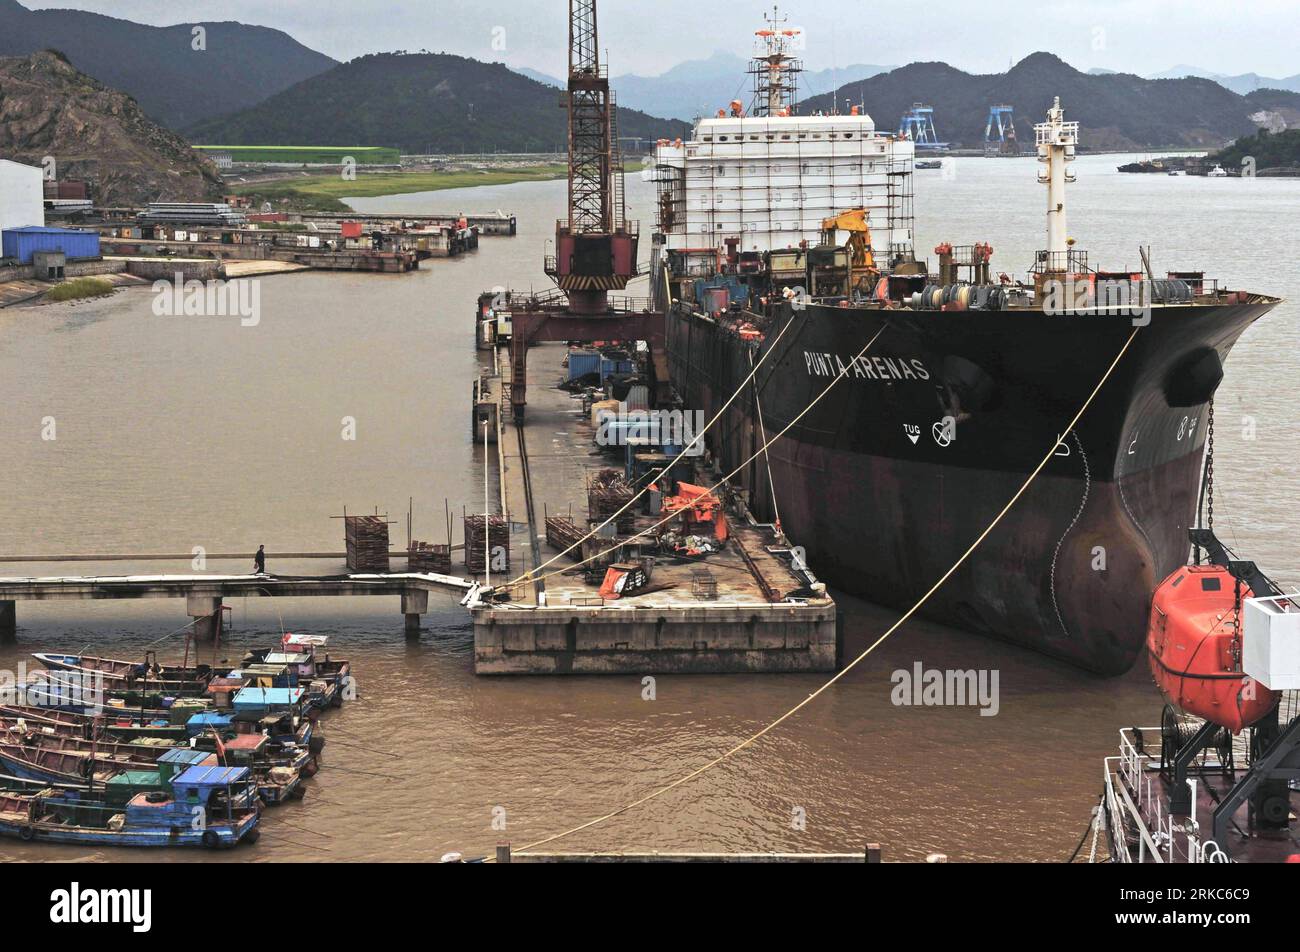 Bildnummer : 54678857 Datum : 29.09.2010 Copyright : imago/Xinhua (101126) -- (Xinhua) -- Un navire semi-fini, dont la construction est forcée à un arrêt en raison de l'annulation de la commande, est vu dans un chantier naval privé dans la ville de Taizhou, dans la province de Zhejiang de l'est de la Chine, le 29 septembre 2010. En plus de 40 ans, l'océan vaste et profond a donné à Li Changxian tout sauf les soucis. Mais depuis le début de la crise financière mondiale il y a deux ans, le milliardaire de 44 ans est tombé dans le blues. Debout dans le chantier naval autrefois animé de Hongda qu'il dirigeait à Taizhou, Li Changxian posa sa main sur le h rouillé Banque D'Images